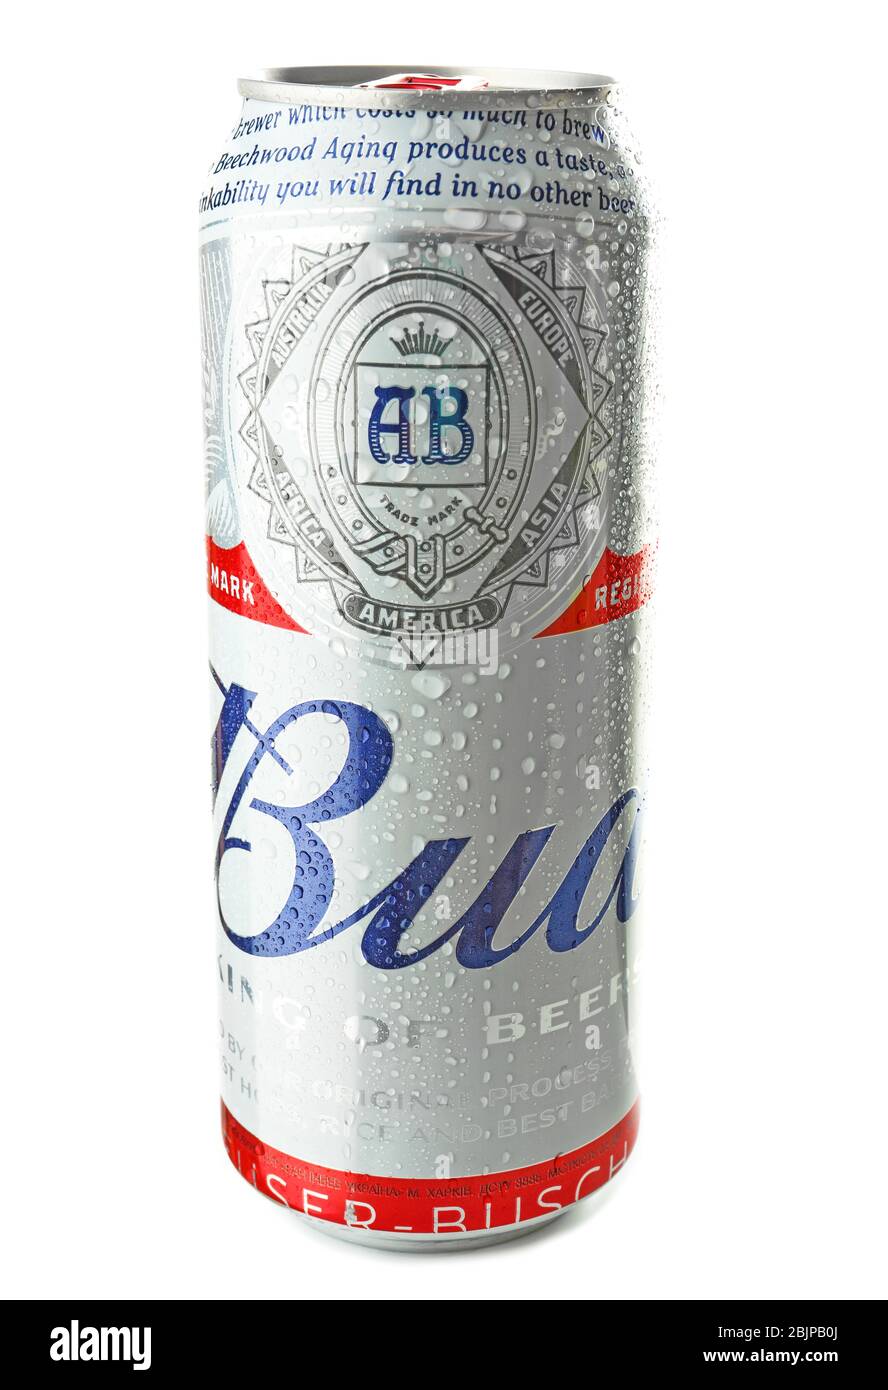 Bud Light Bier 355 ml - Das No. 1 Bier original aus den USA